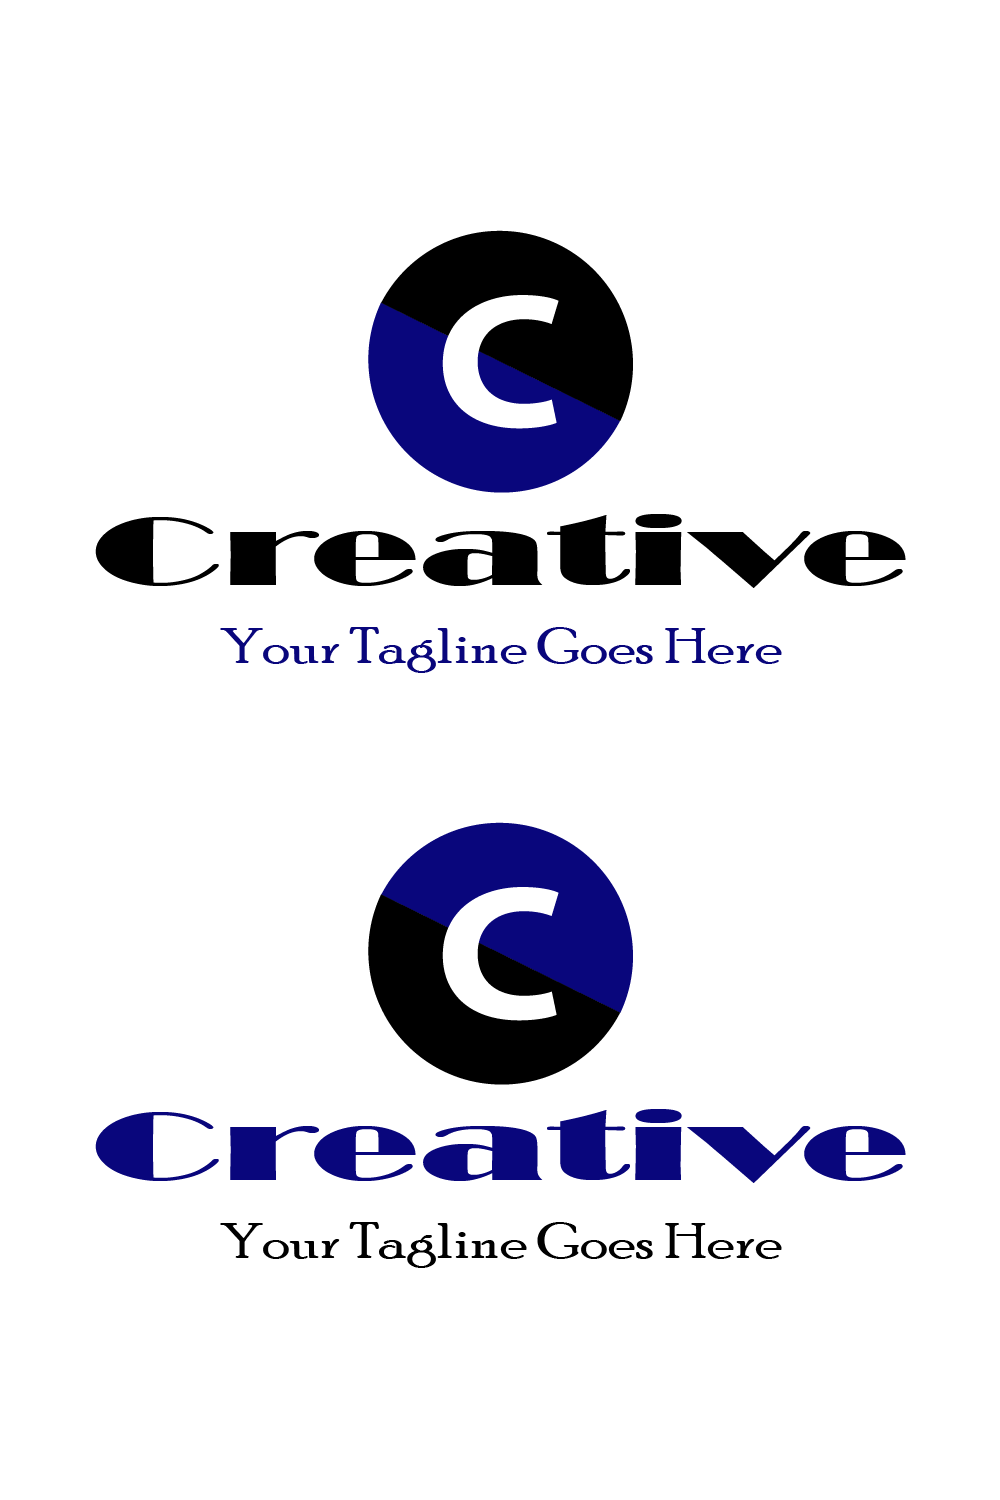 C Letter Logo Pinterest image.